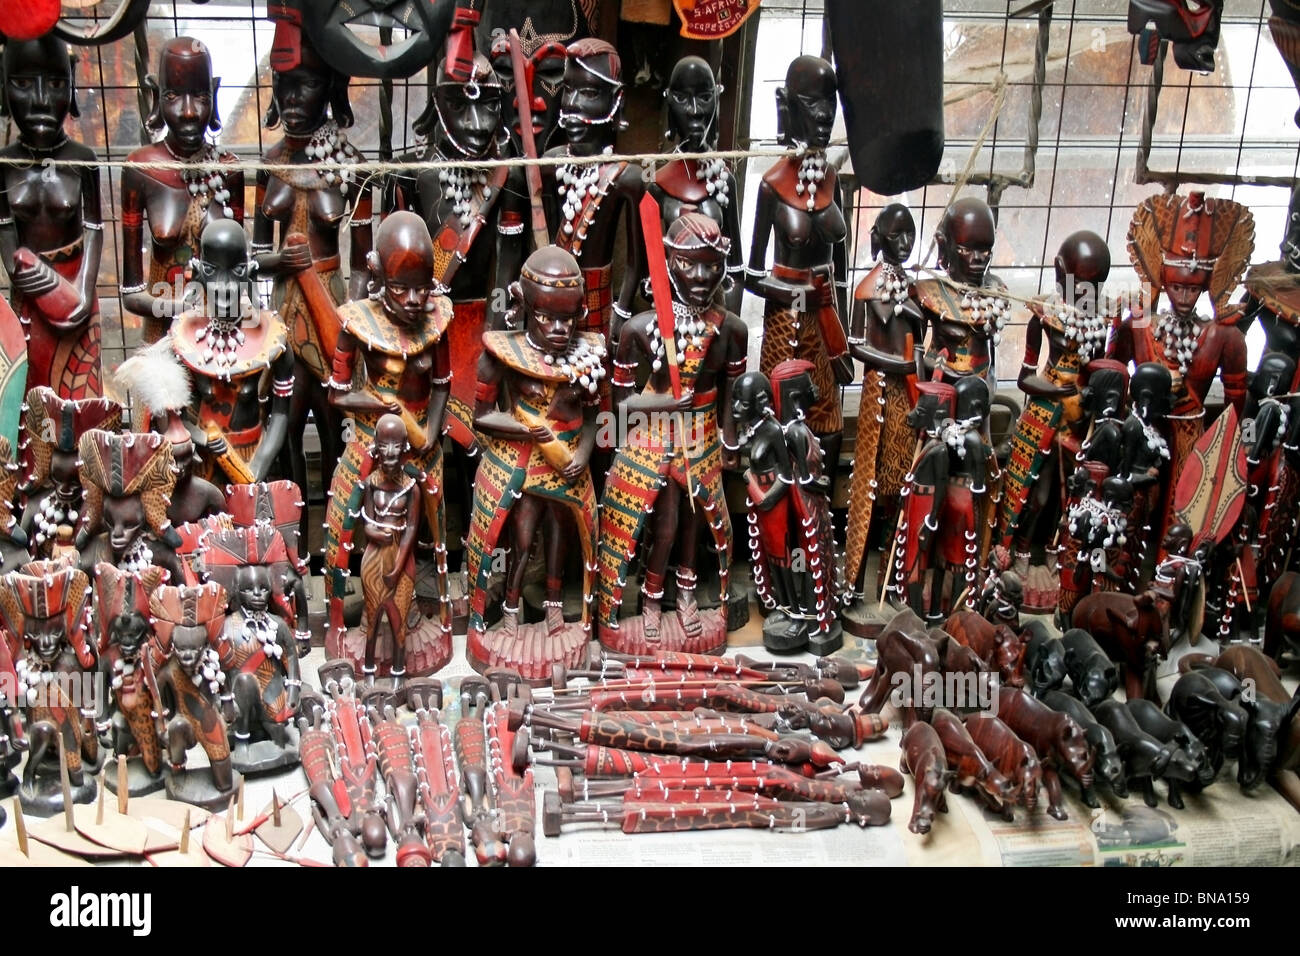 Les Masai des masques en bois et des objets d'artisanat traditionnel vendu à un magasin de souvenirs près de Masai Mara National Reserve, Kenya, Afrique de l'Est Banque D'Images